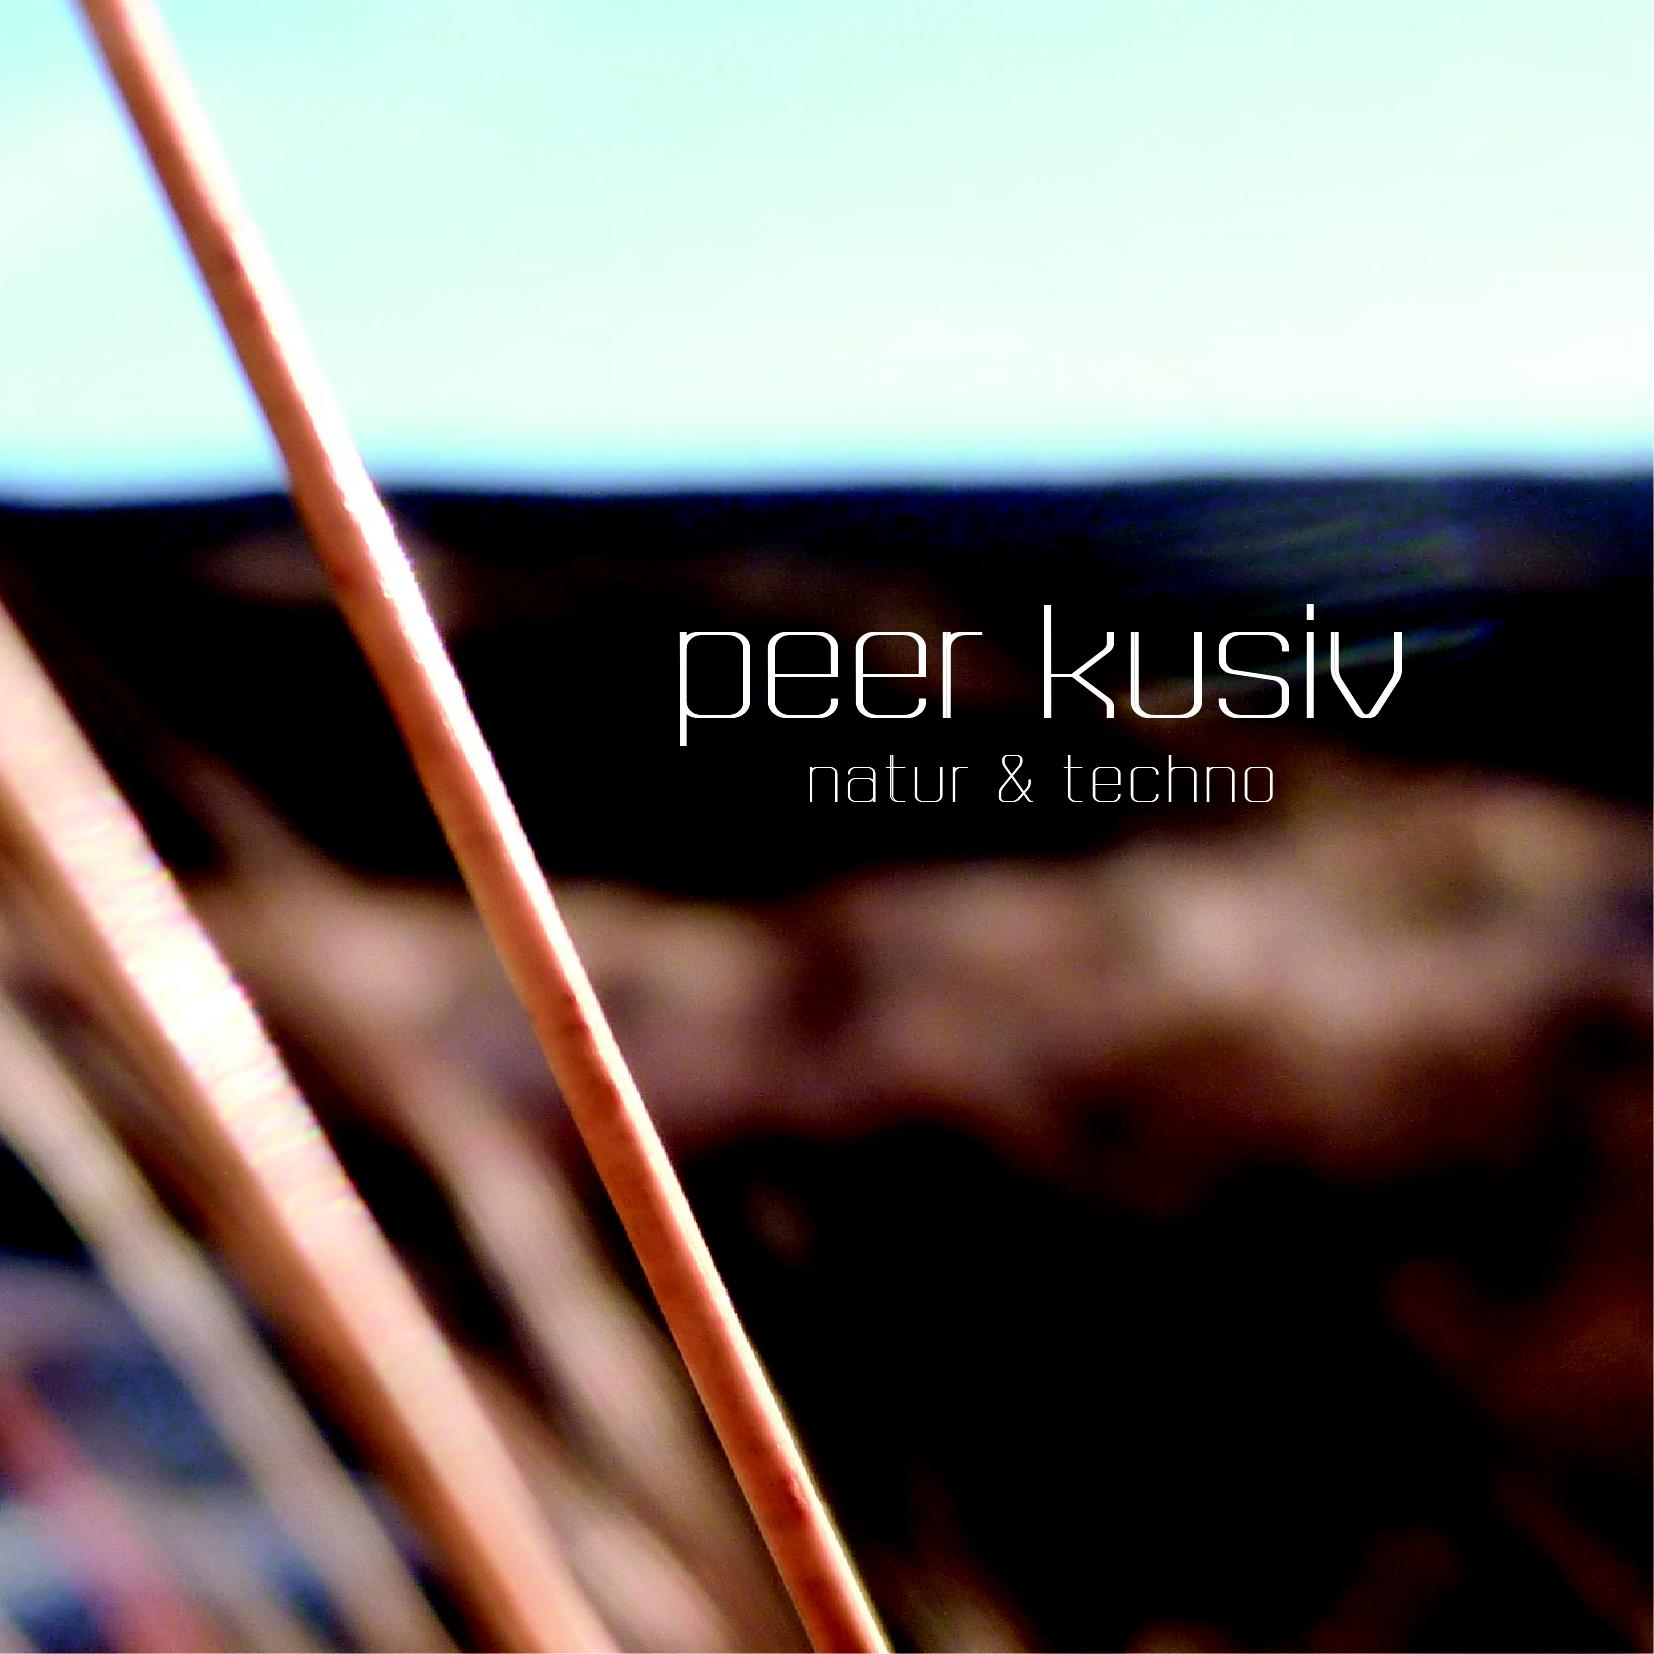 Peer Kusiv - Natur & techno